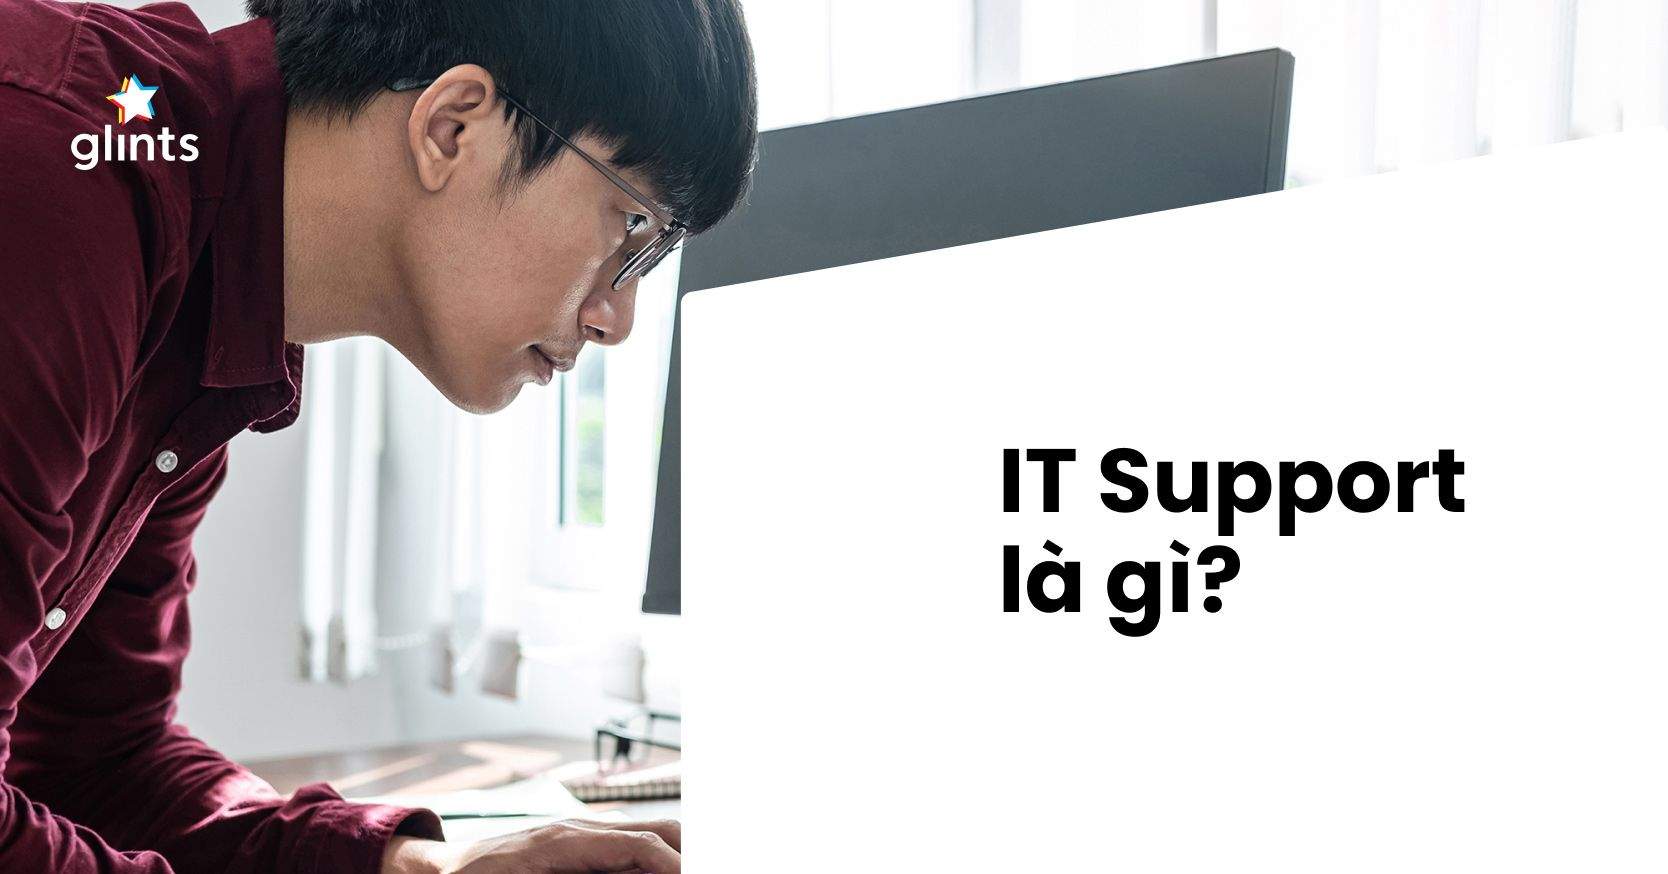 IT support là gì? Làm IT support cần có kỹ năng gì?